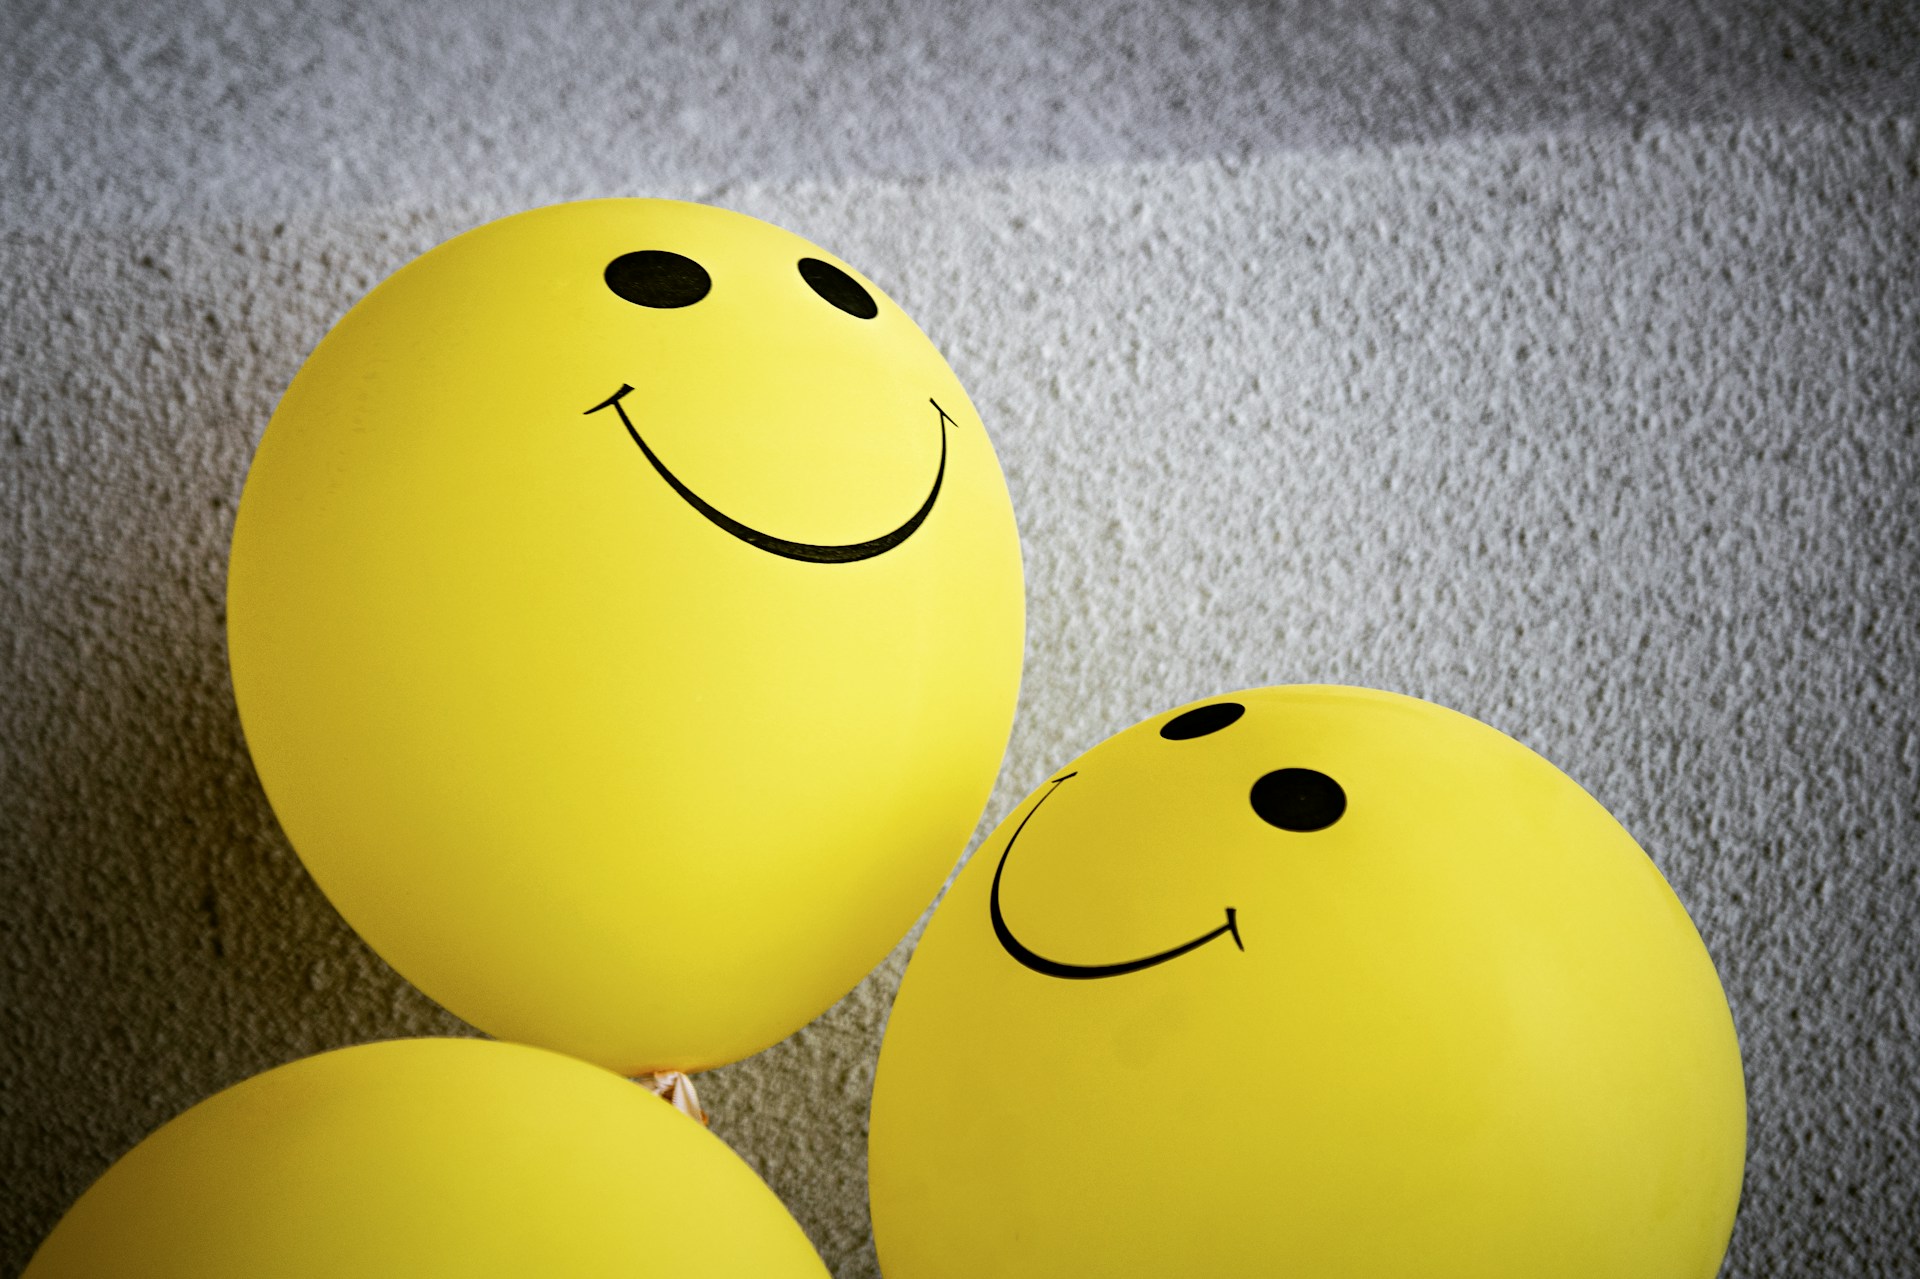 Das Bild zeigt drei gelbe Luftballons voneinem grauen Hintergrund. Links unten im Bild ist nur das obere Viertel eines Ballons zu sehen. Die beiden anderen sind größer im Bild und man sieht auf ihnen Smiley.